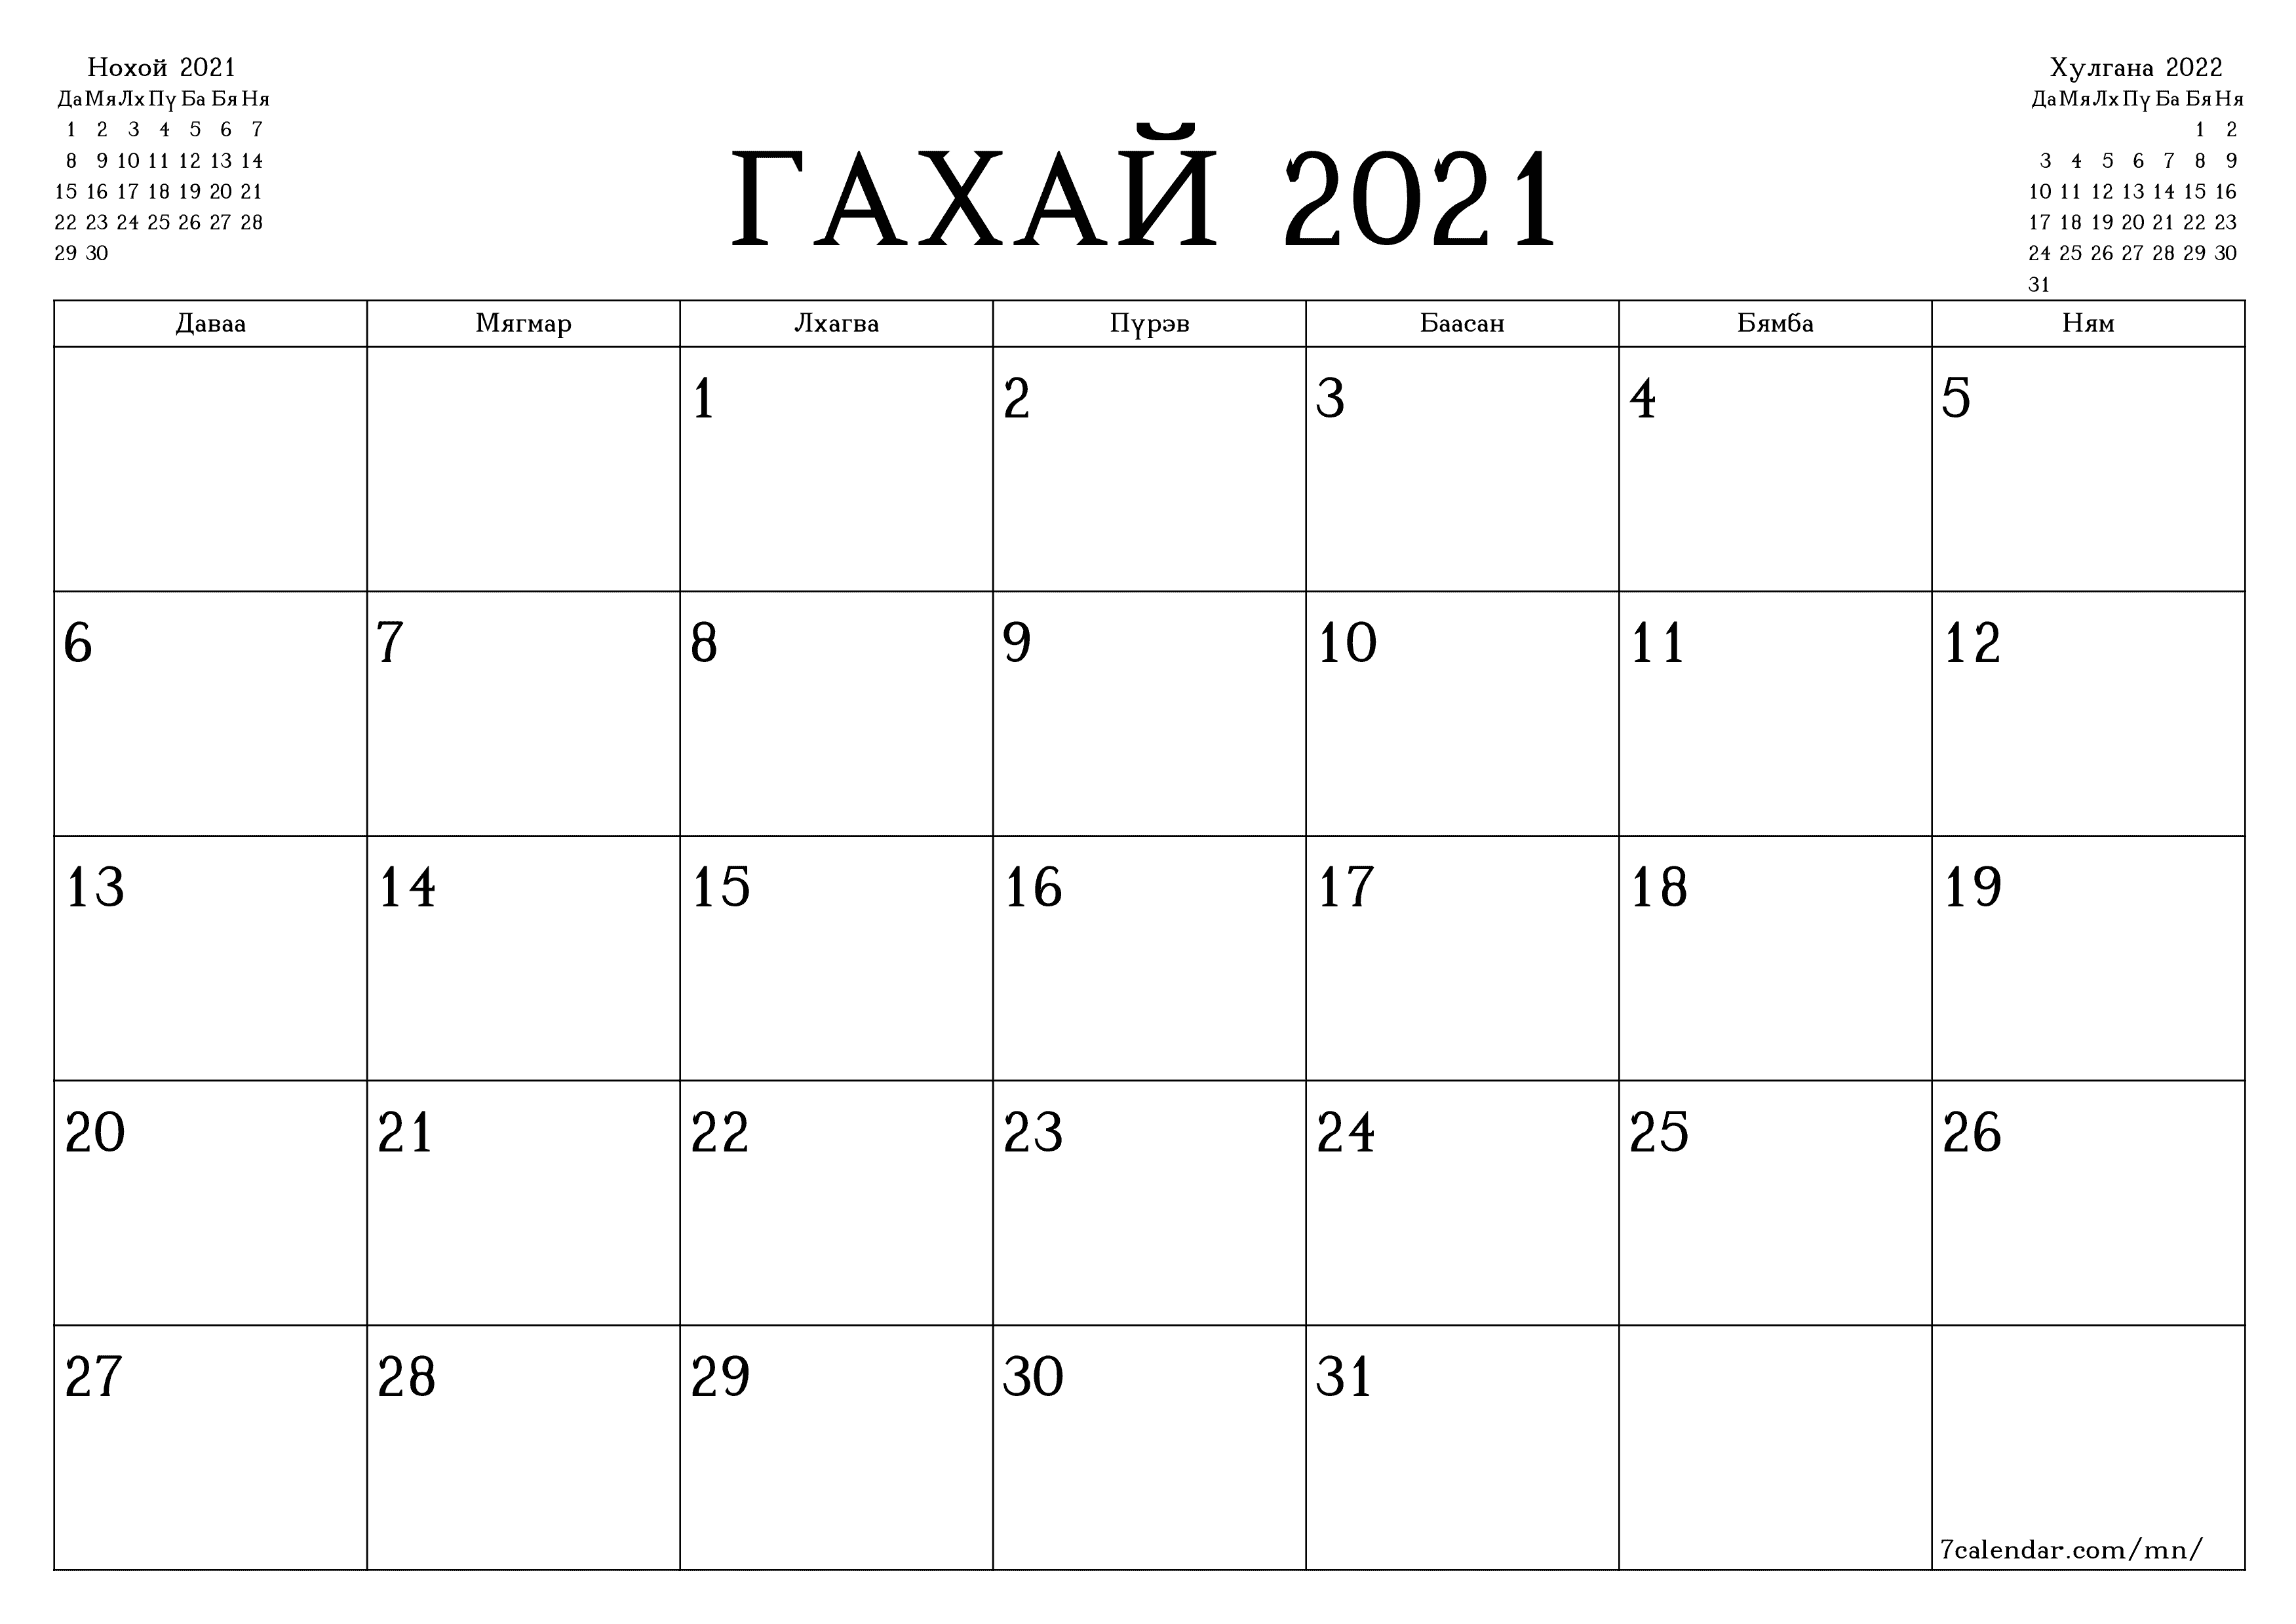 Гахай 2021 сарын сар бүрийн төлөвлөгөөг тэмдэглэлтэй хоосон байлгаж, PDF хэлбэрээр хадгалж, хэвлэ PNG Mongolian